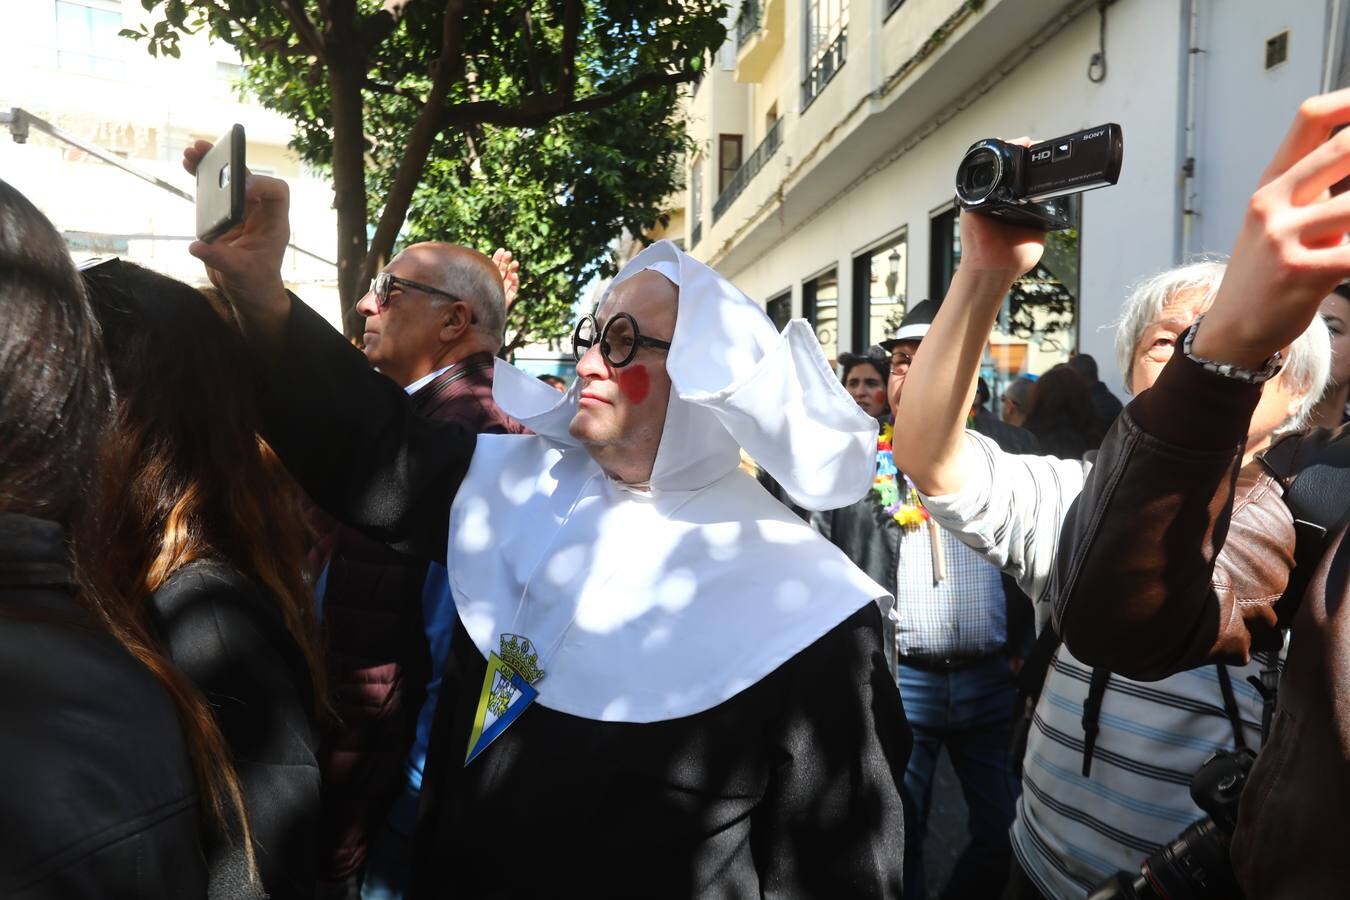 Las coplas inundan las calles de Cádiz de humor y reivindicaciones